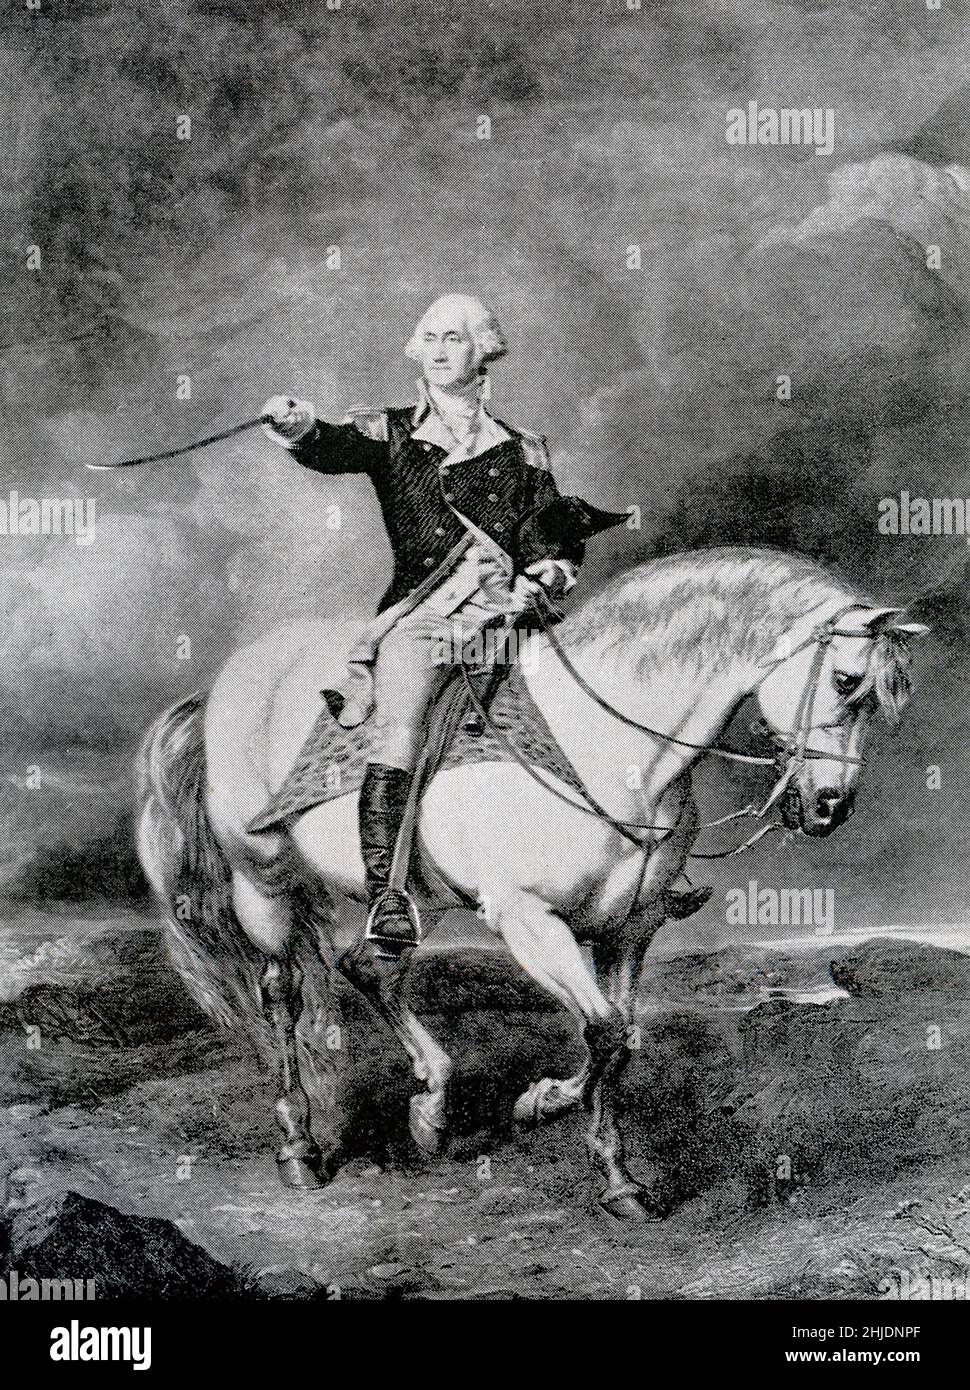 General George Washington wurde am 15. Juni 1775 zum Oberbefehlshaber der kontinentalen Armee ernannt. Als amerikanischer Soldat, Staatsmann und Gründungsvater diente er von 1789 bis 1797 als erster Präsident der Vereinigten Staaten. Stockfoto